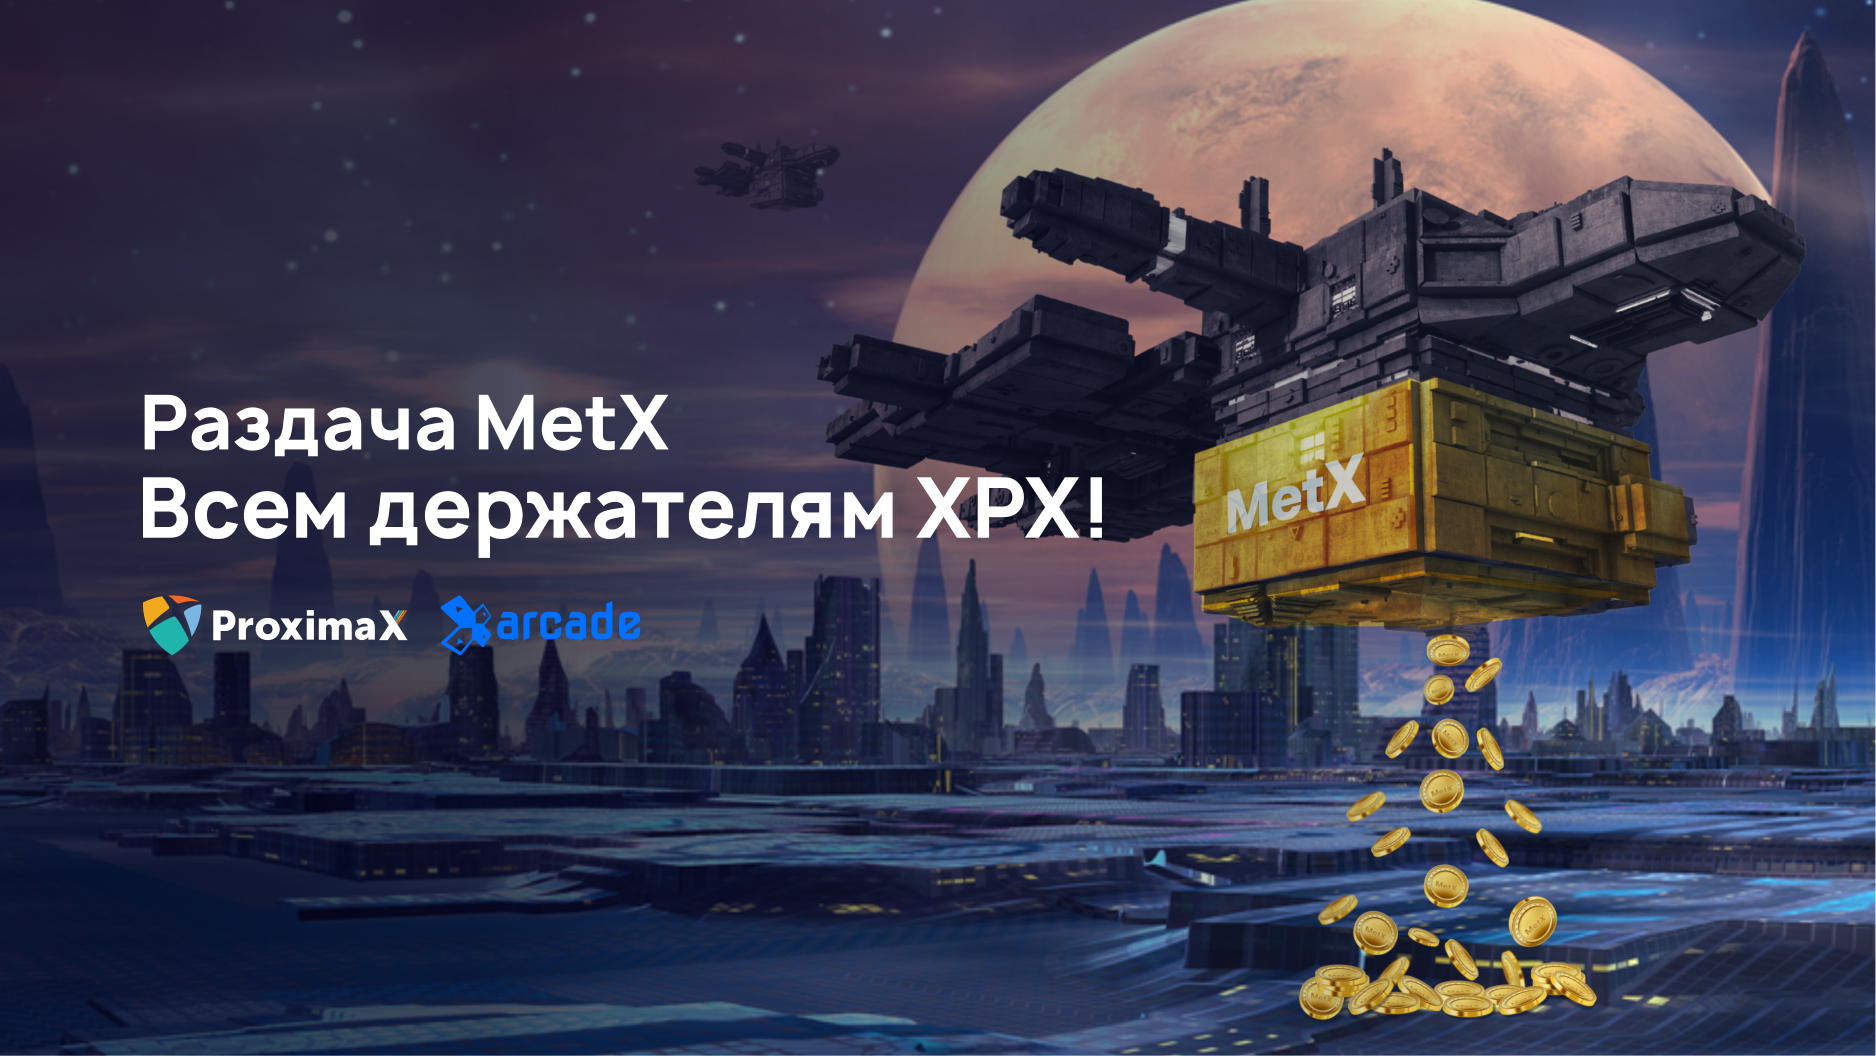 Цифровой актив Метавселенной MetX ждёт всех держателей XPX